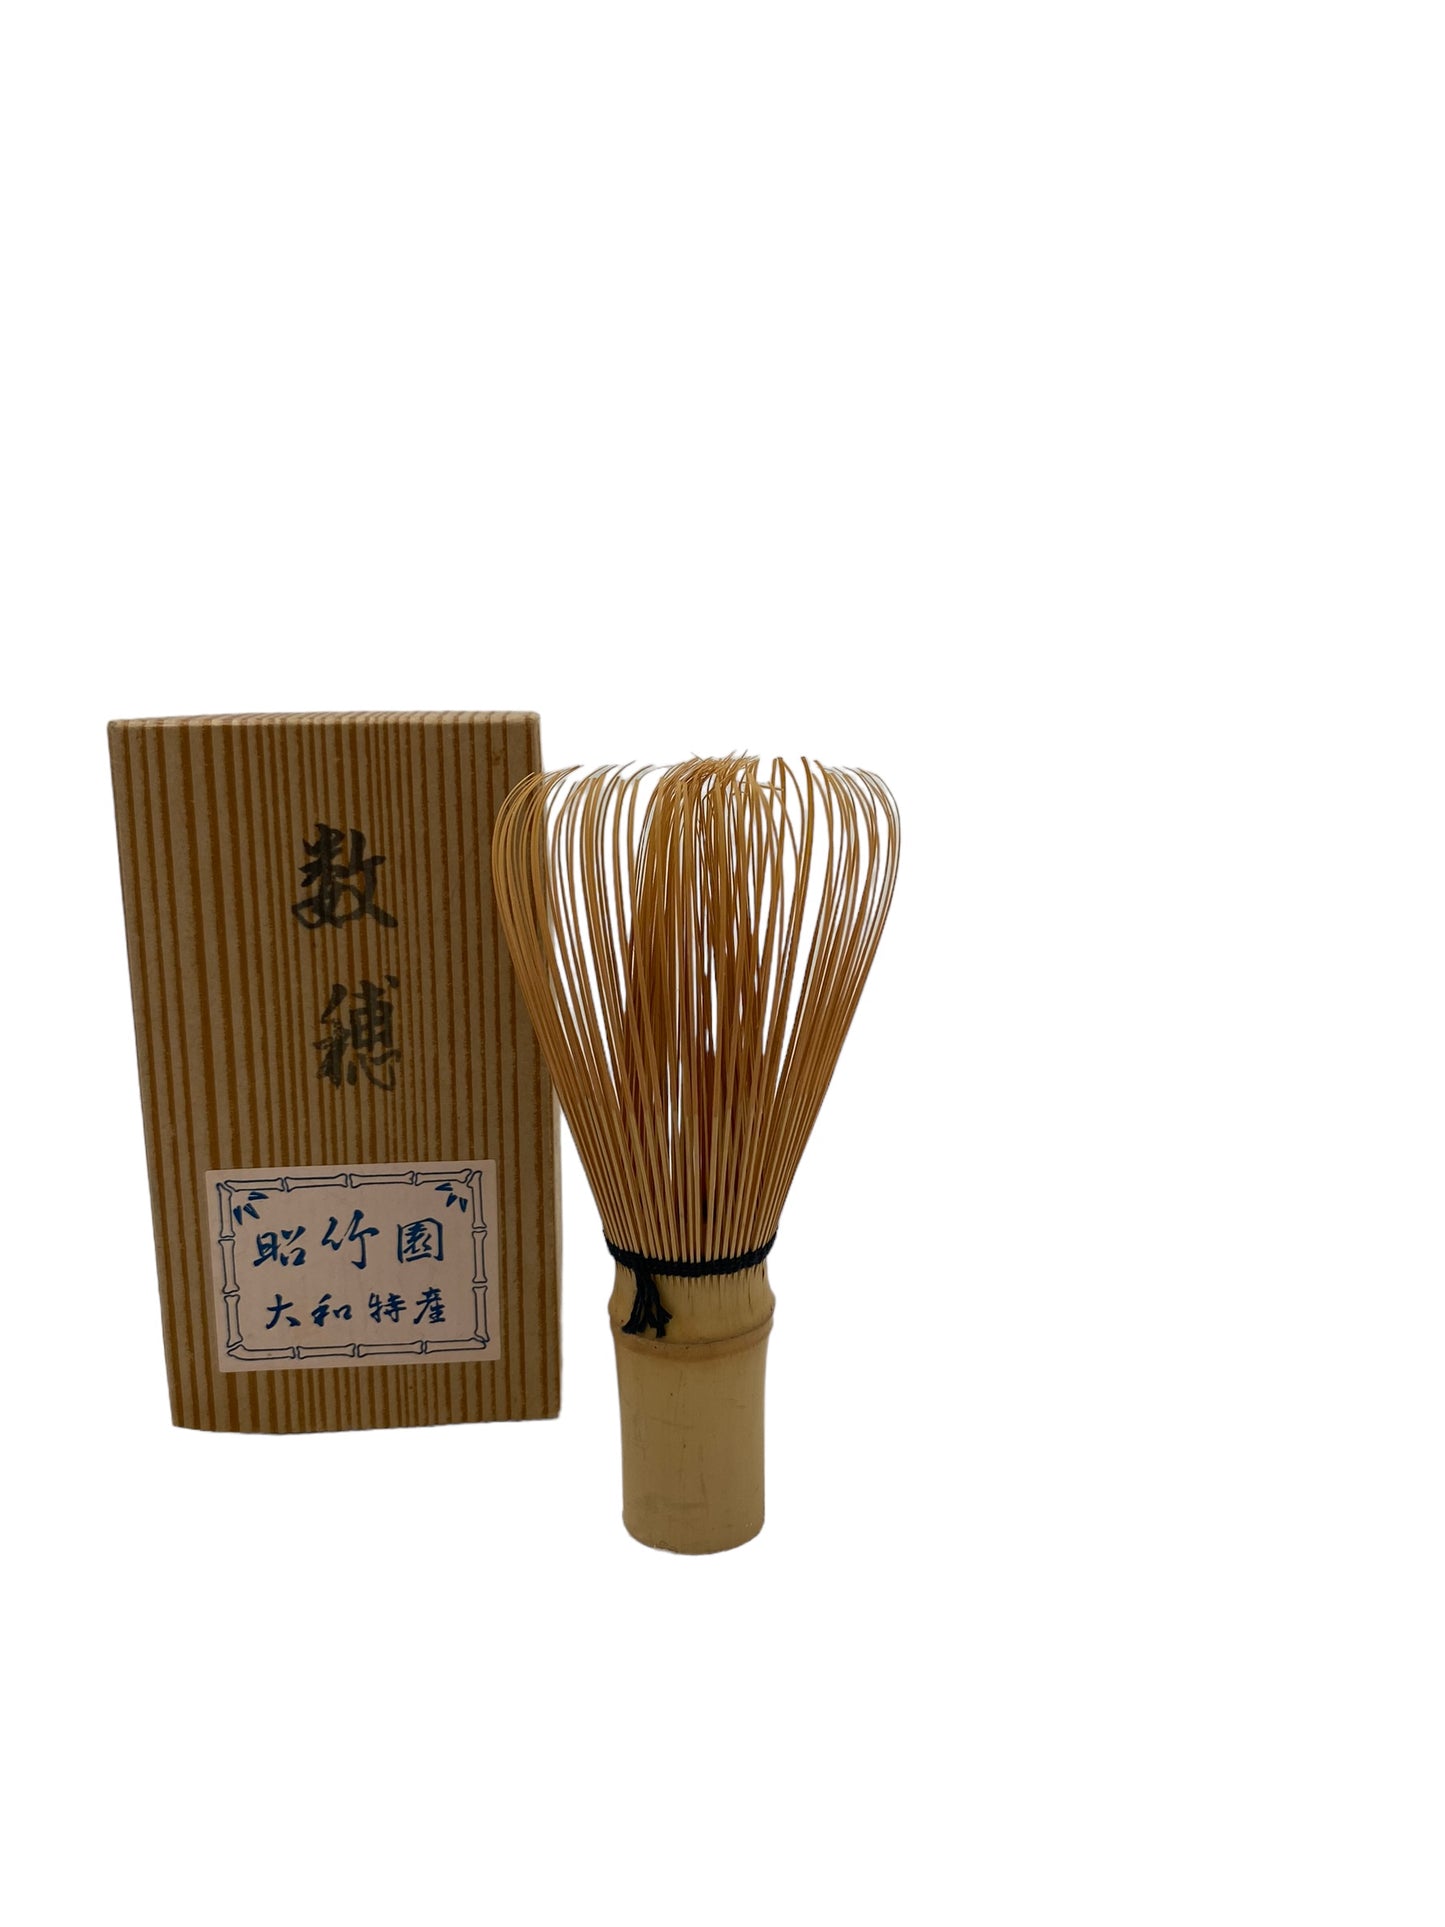 bamboo whisk for making Japanese tea